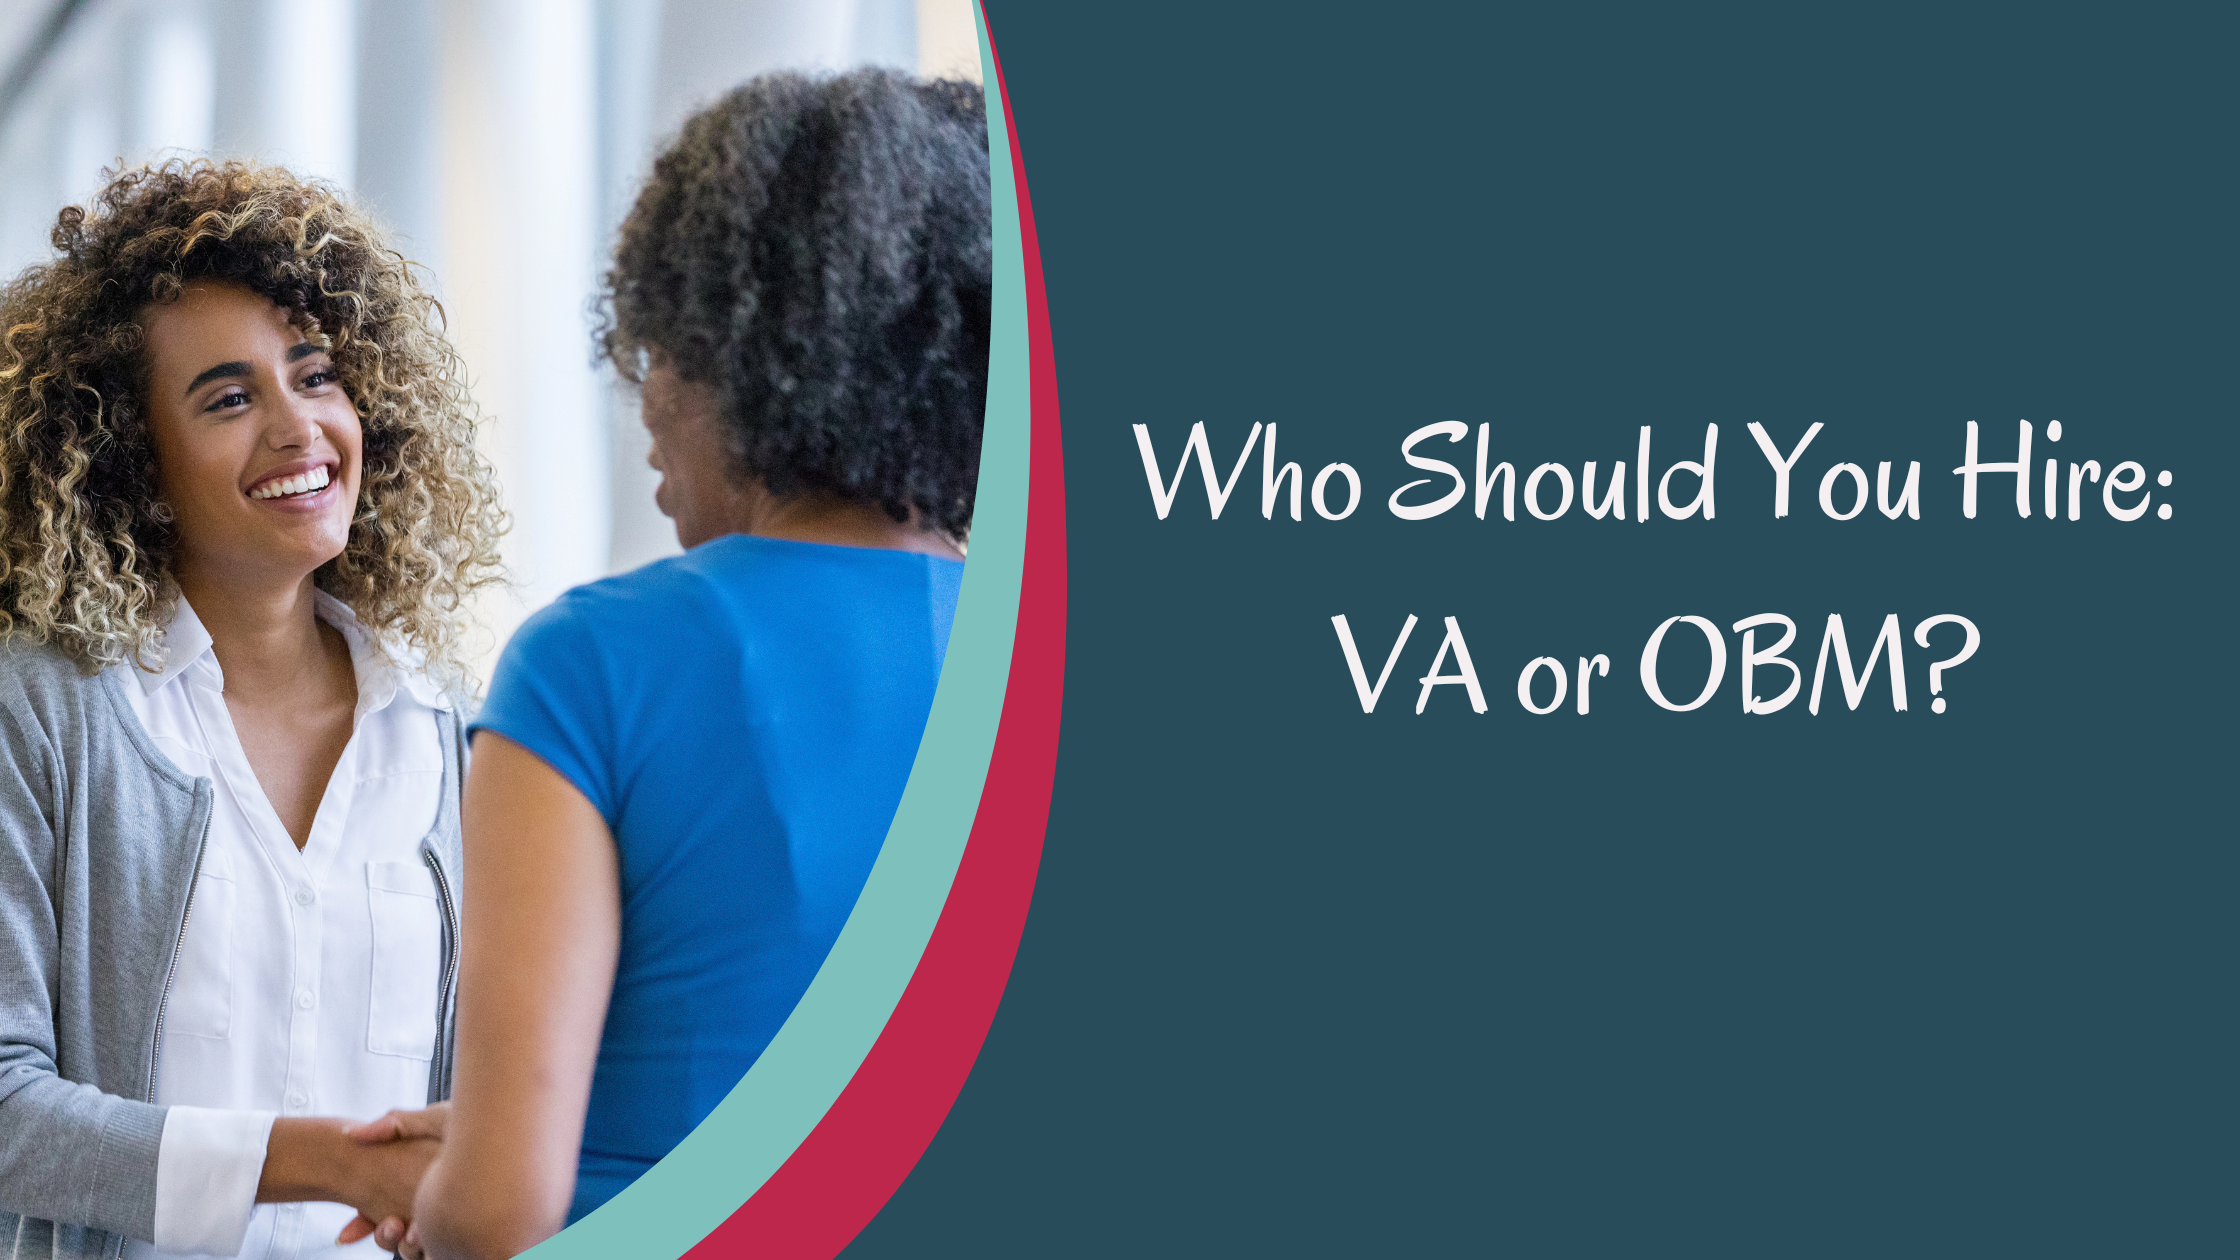 Who should you hire - VA or OBM?